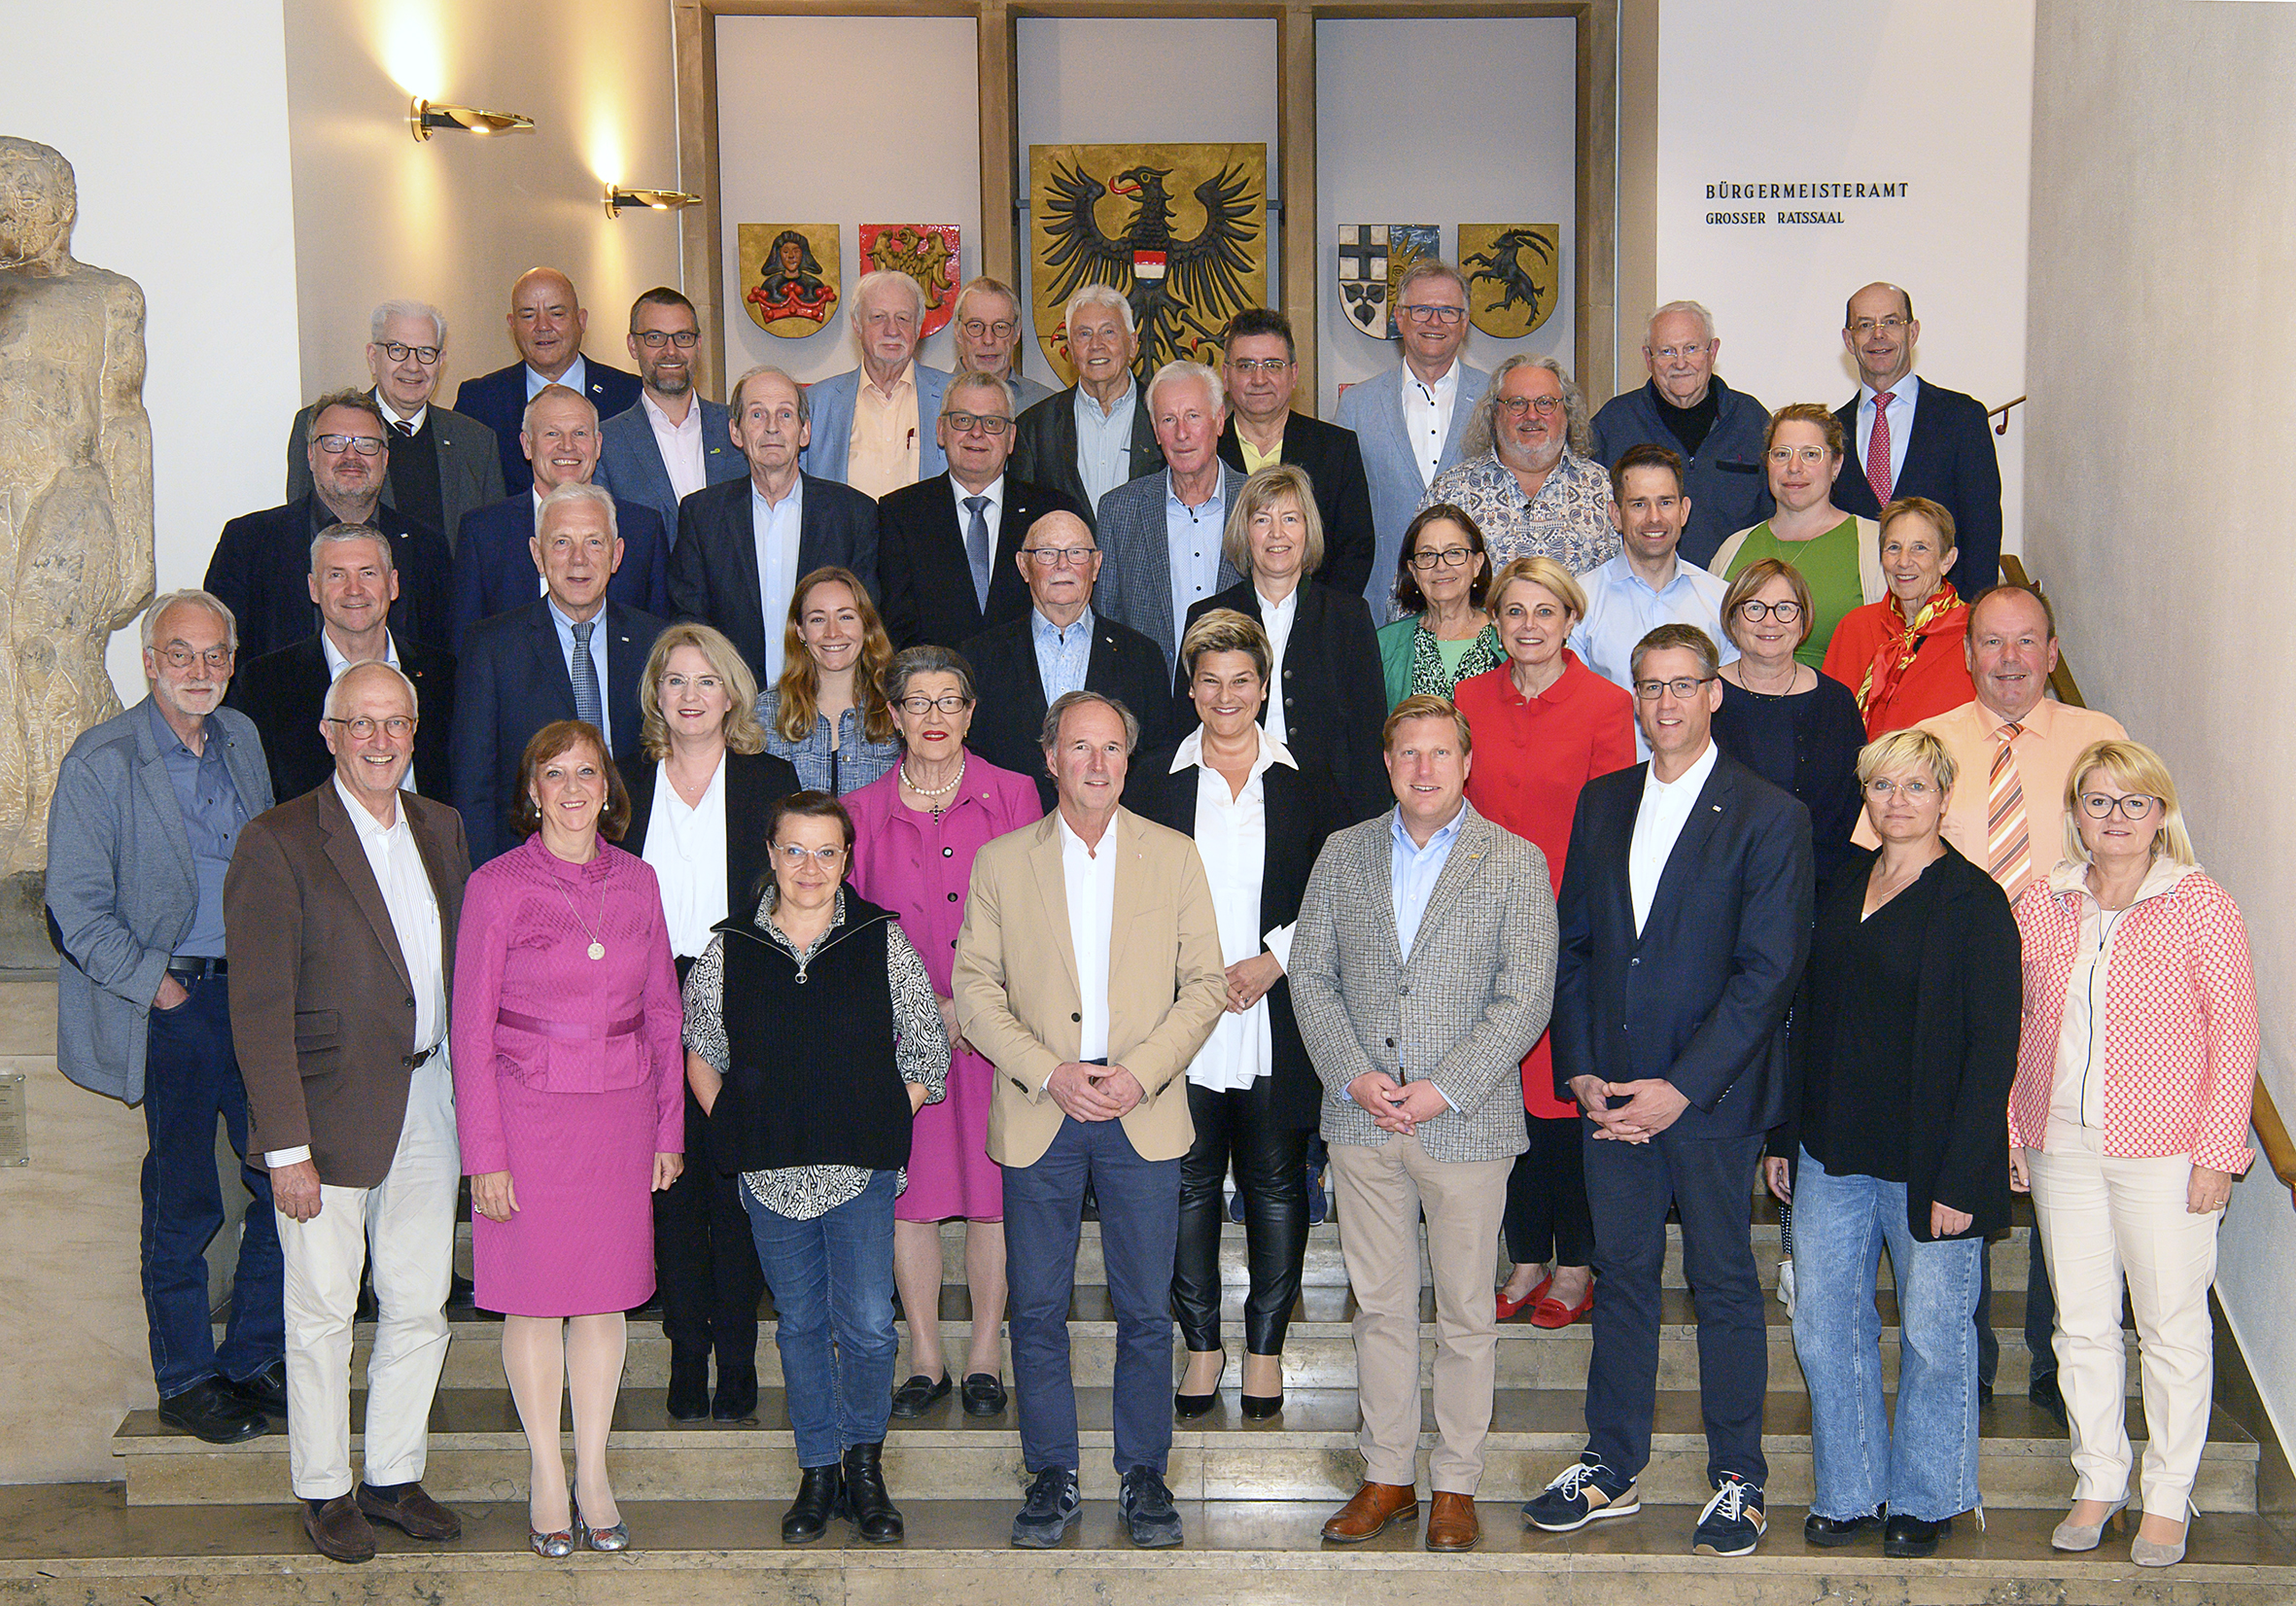 Das Foto zeigt den fast vollständigen Gemeinderat der Stadt Heilbronn im Foyer des Rathauses.